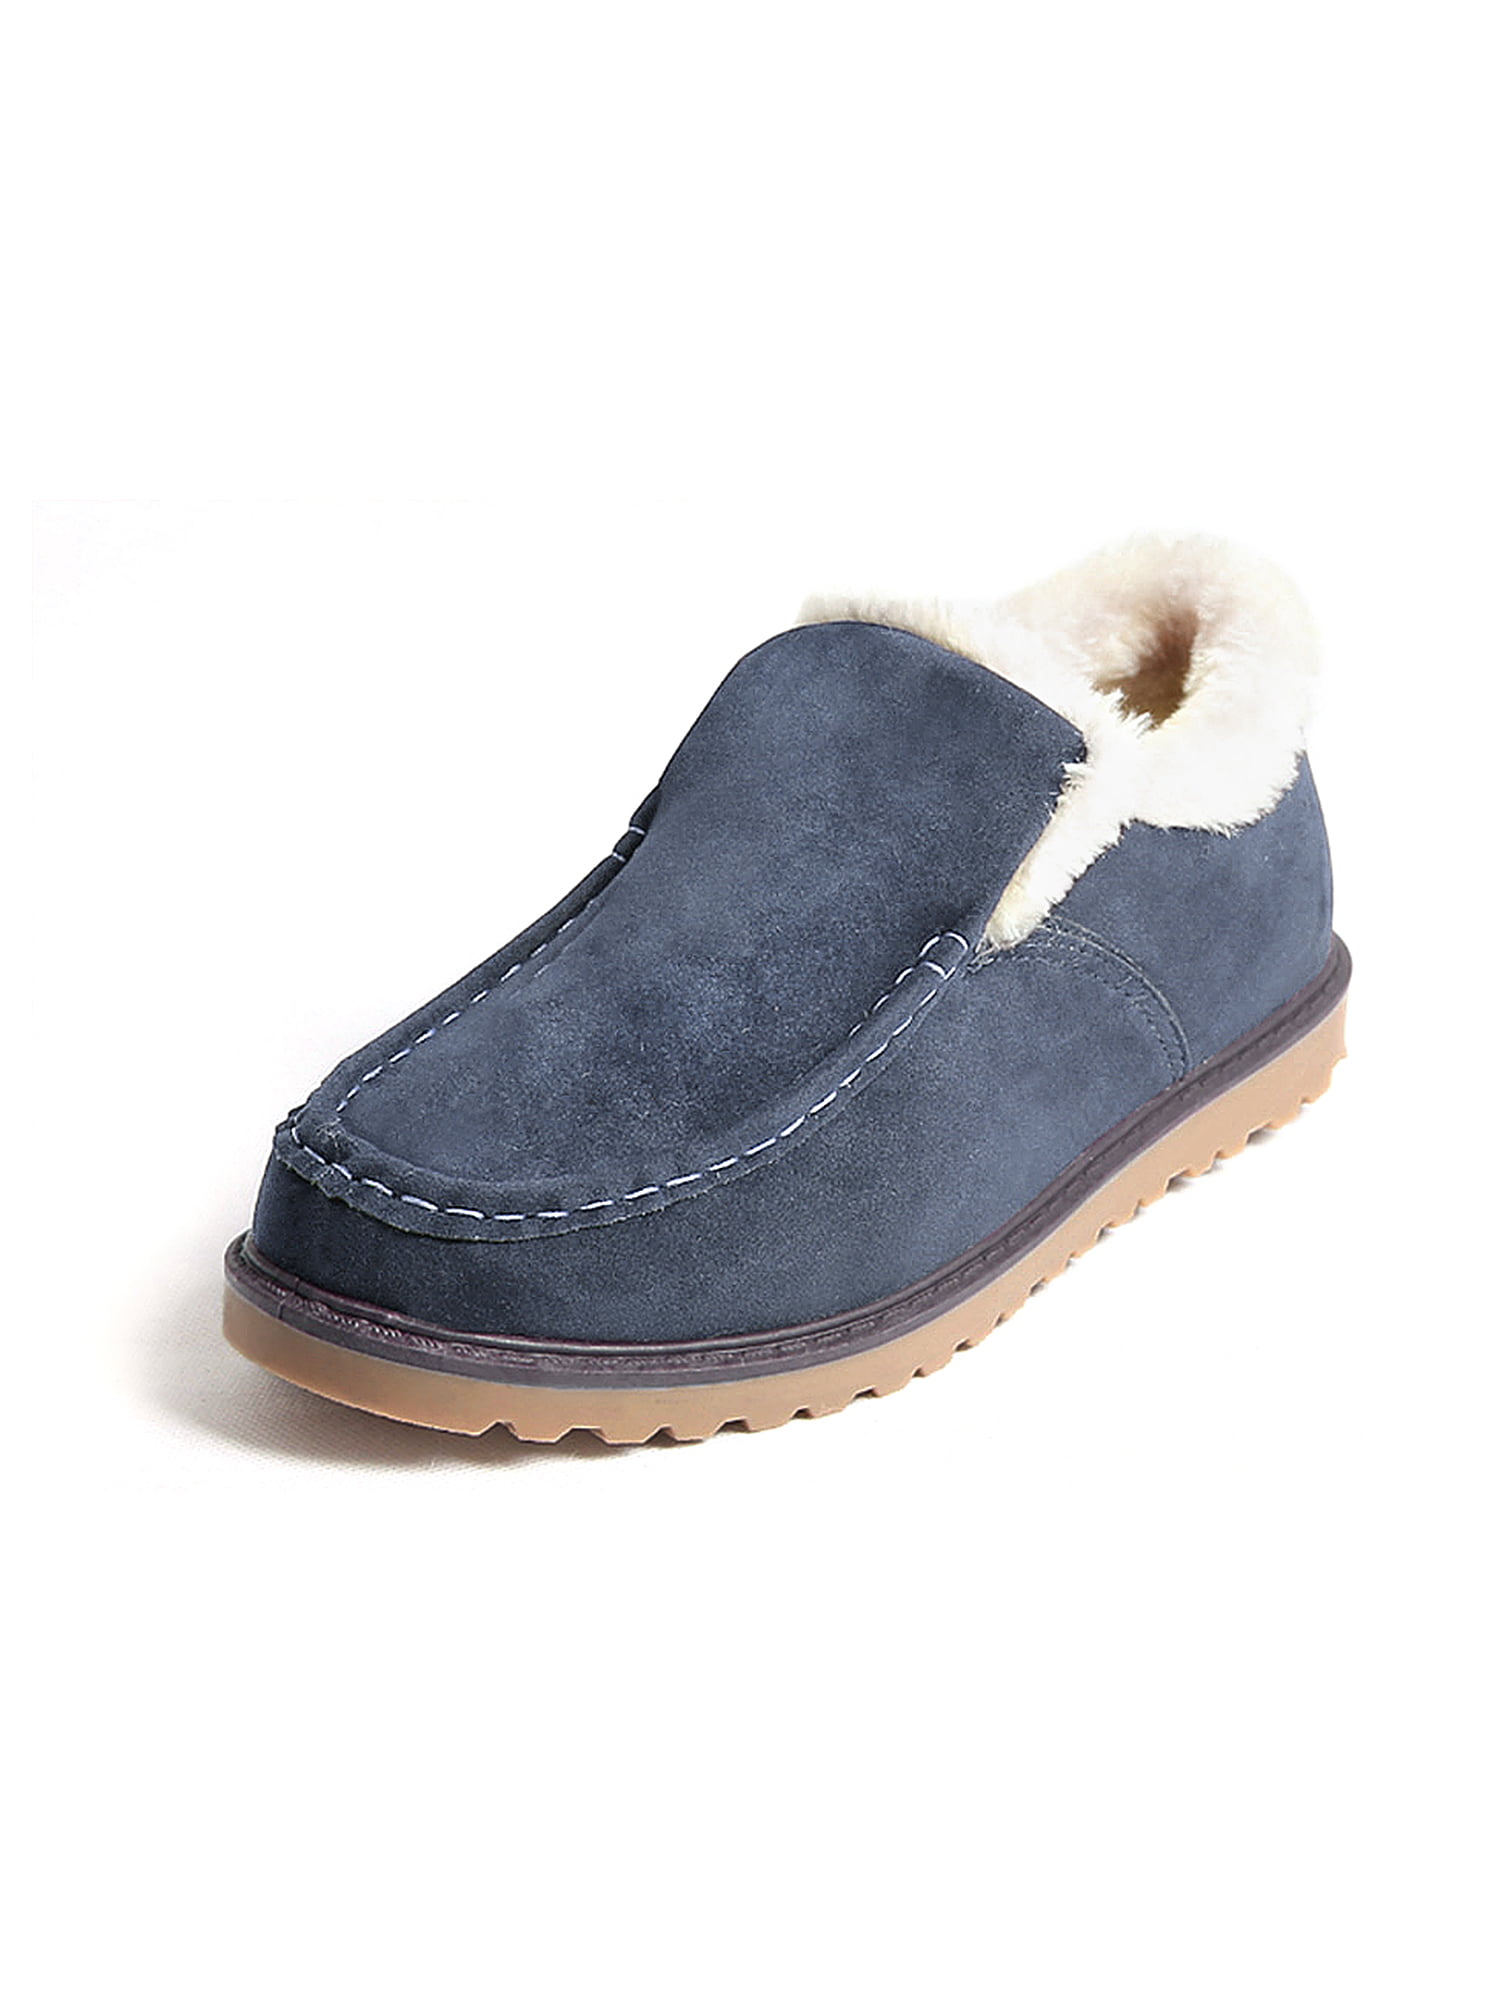 NEWMI - Slip-on Faux Fur Lined Snow Shoes Winter Warm Shoes Men's Plush ...